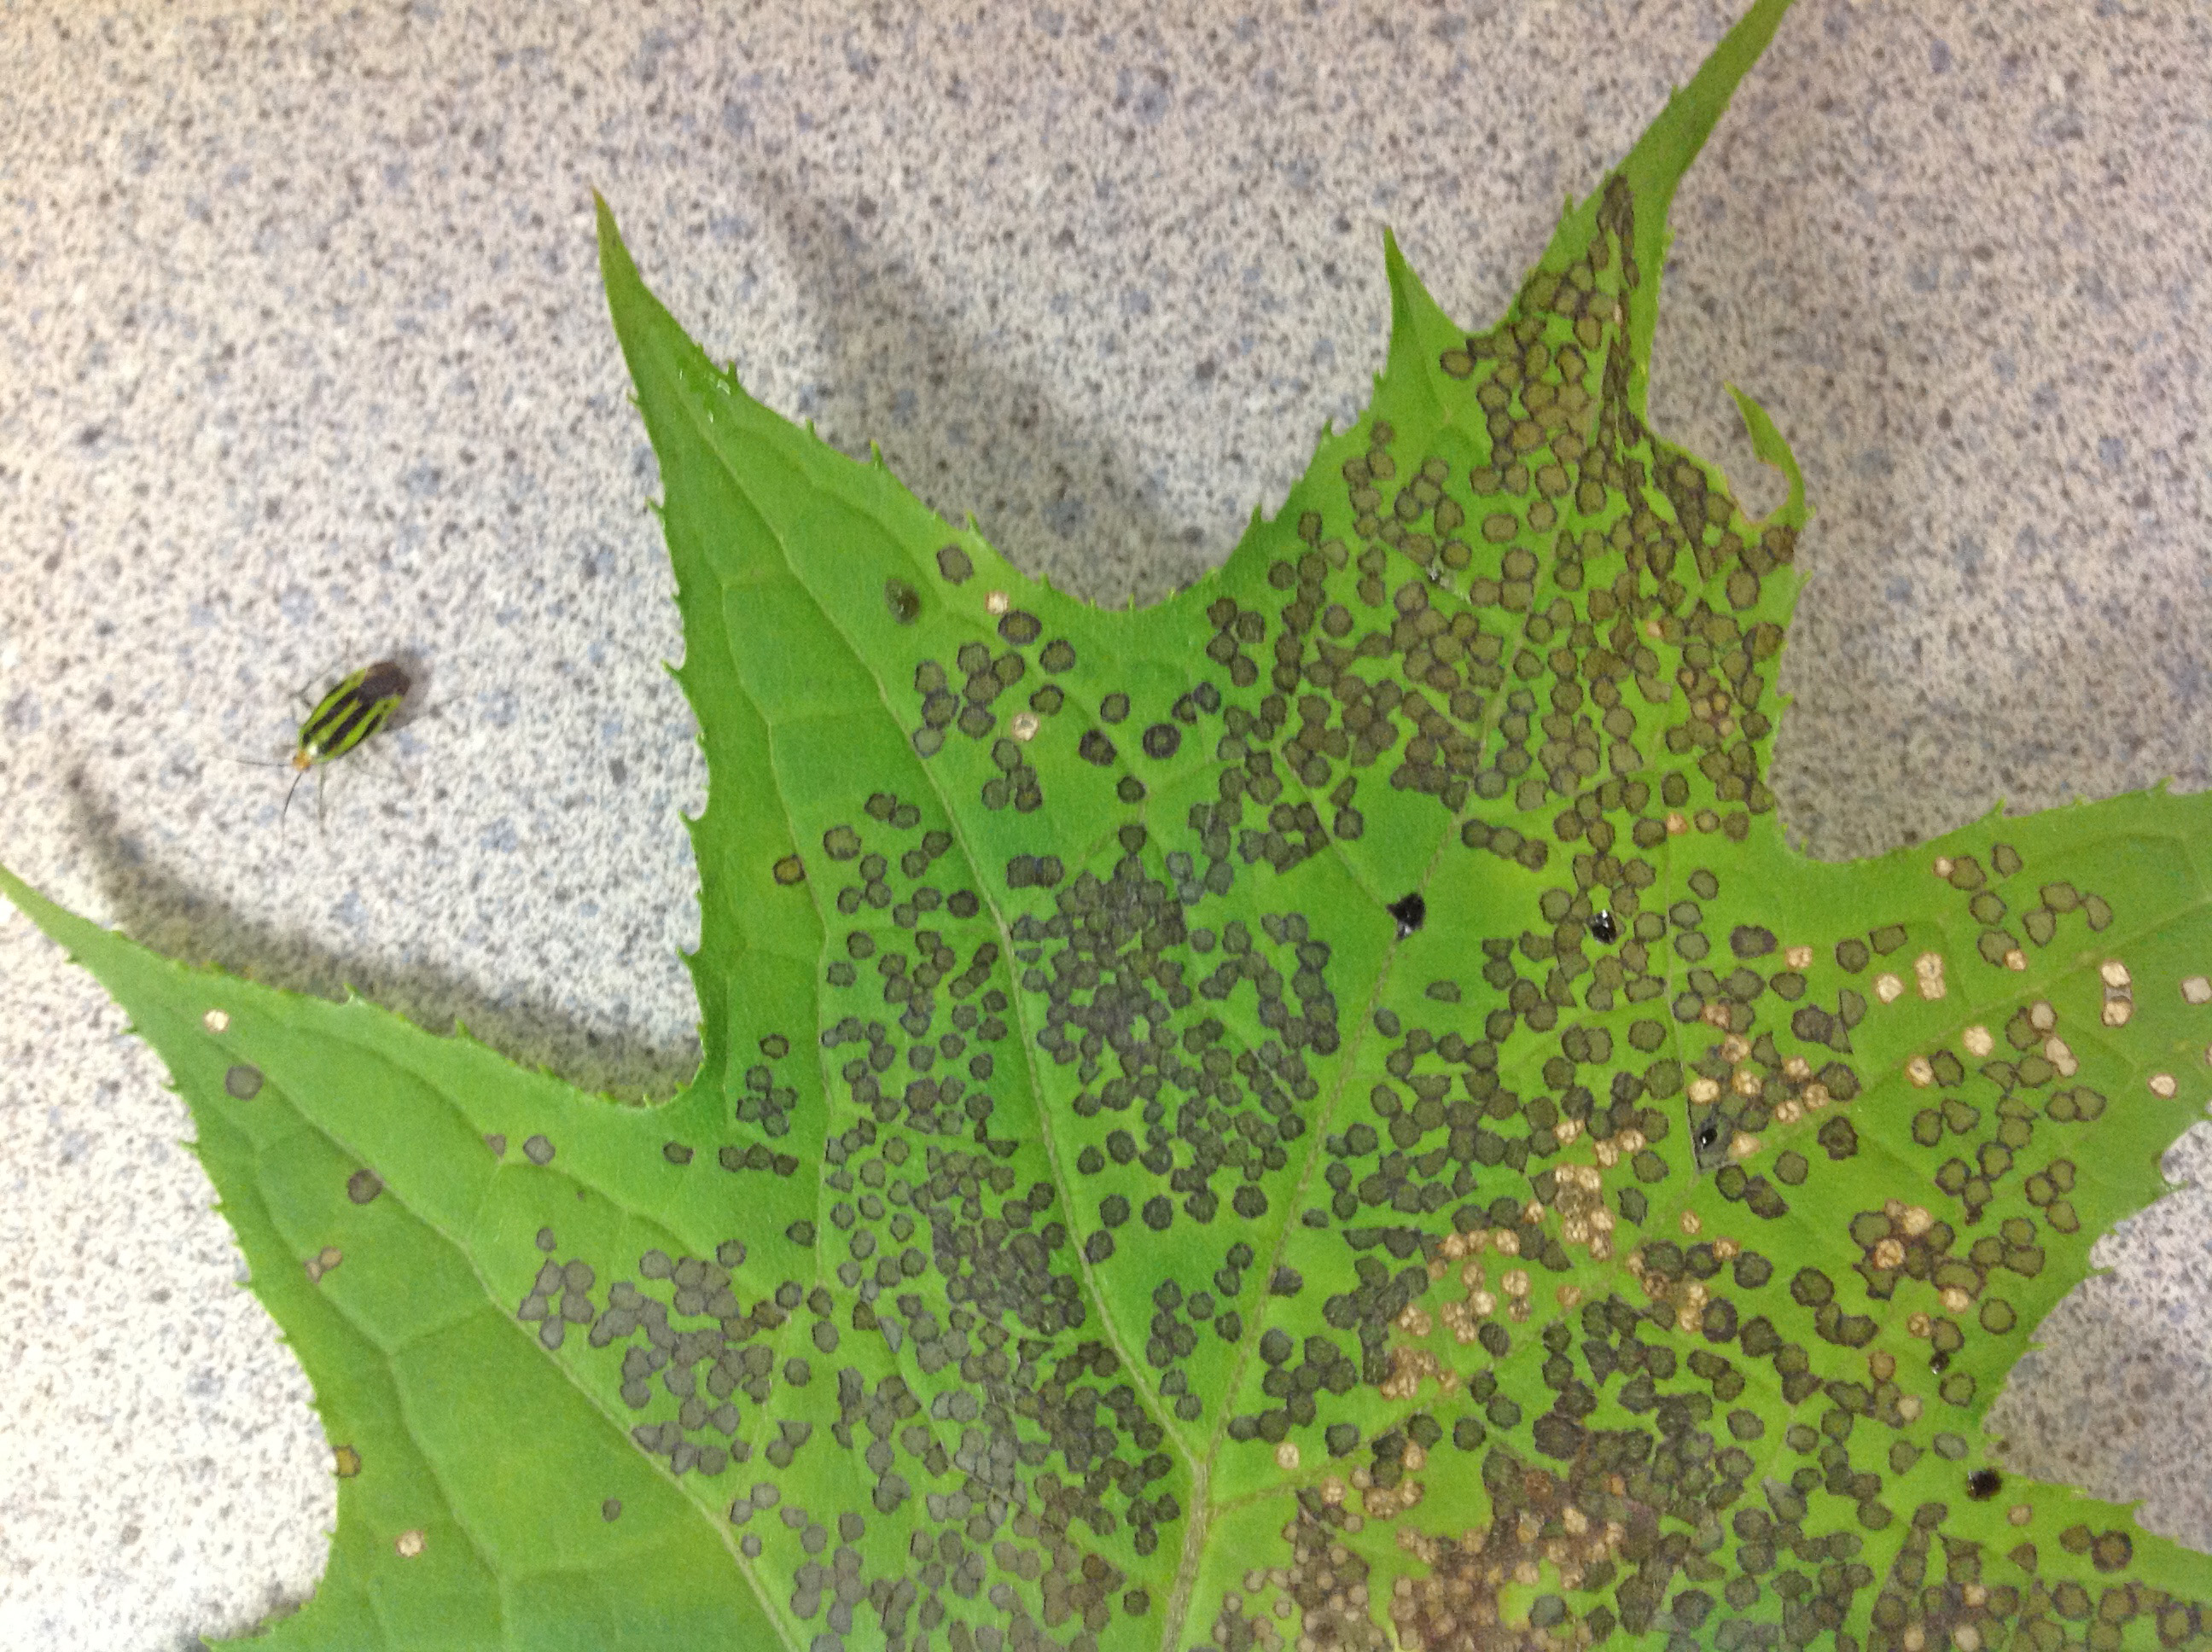 Fourlined plant bug damage on maple